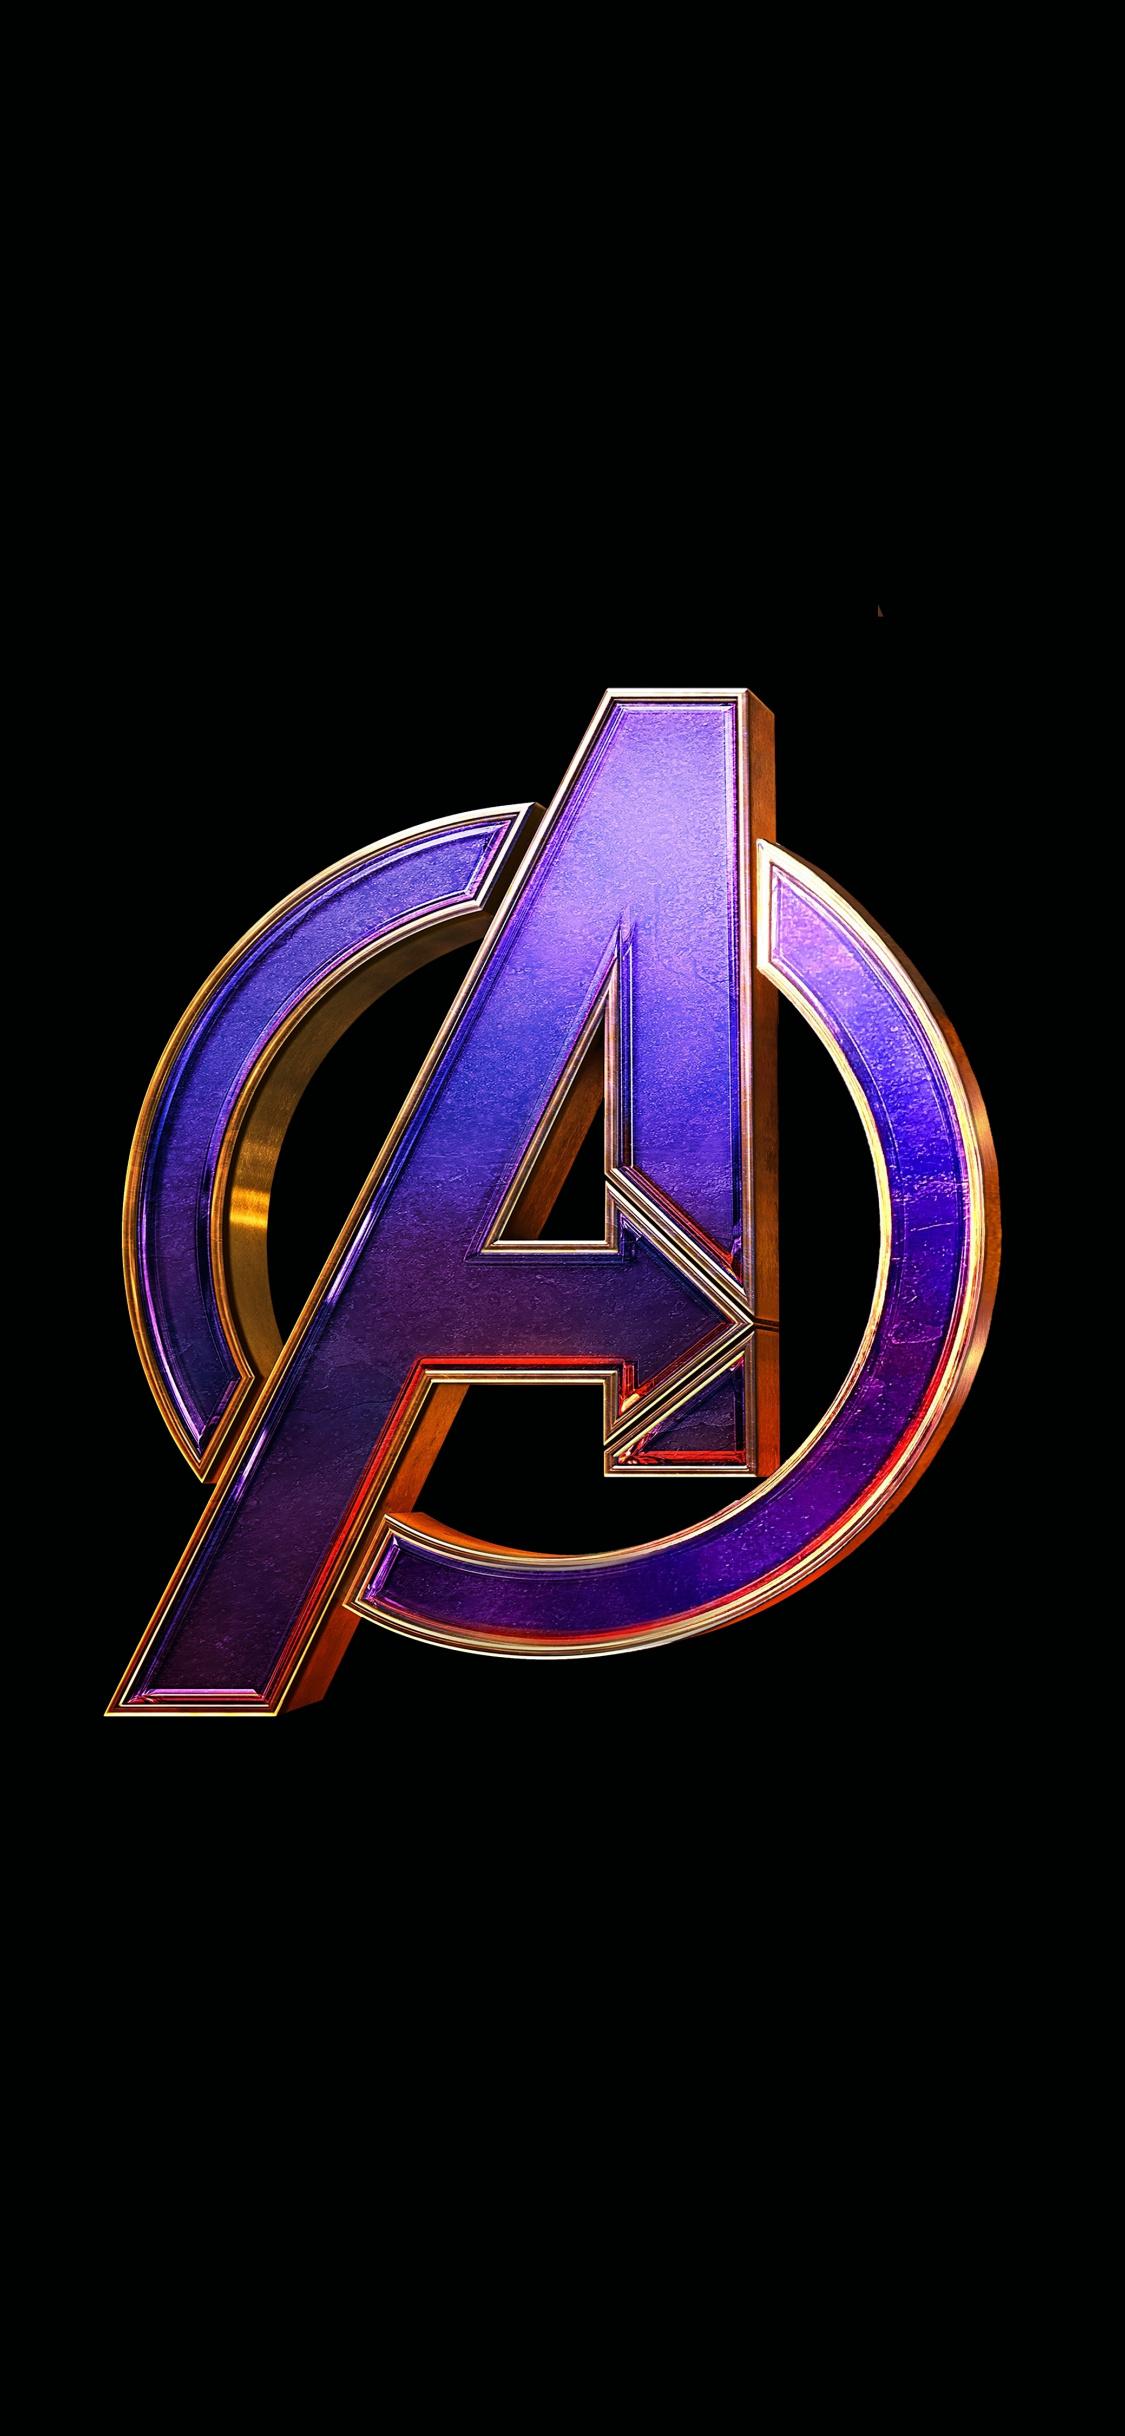 Download 1125x2436 wallpaper avengers: endgame, movie, logo